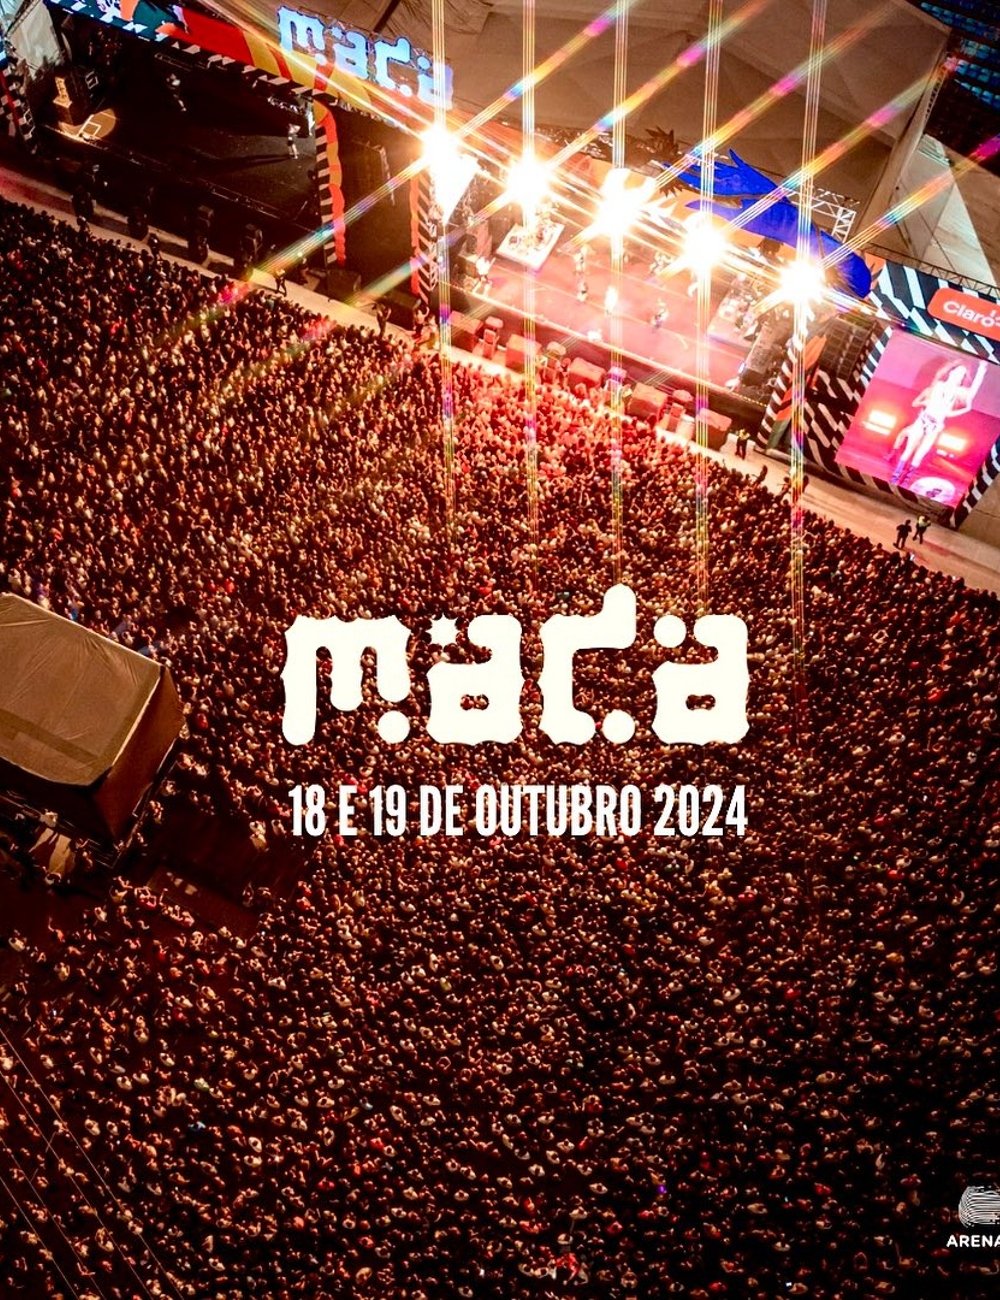 Festival Mada - festival - festivais 2024 - festivais de música - música - https://stealthelook.com.br